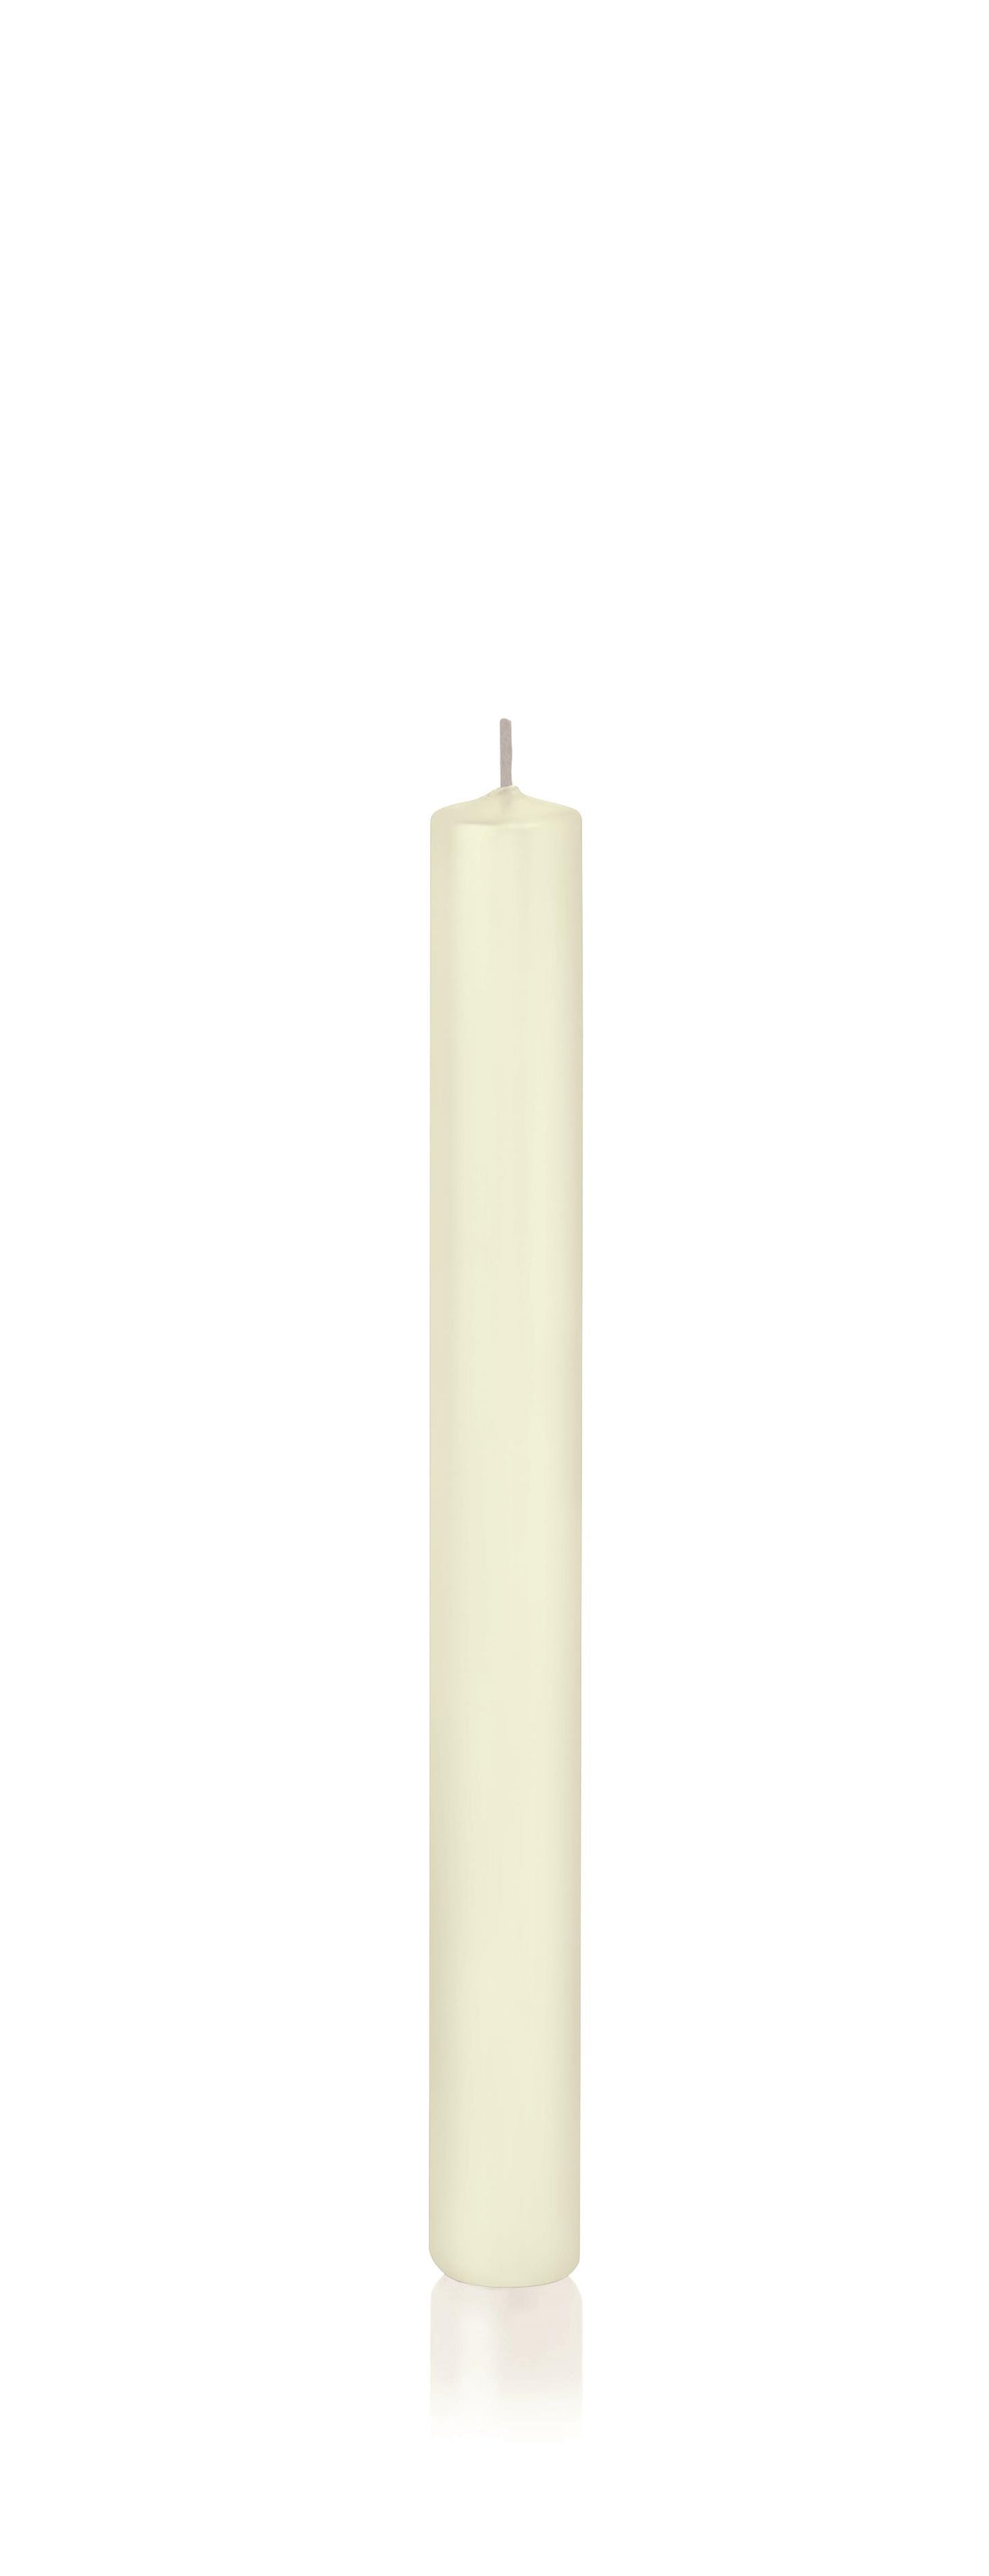 10x Stabkerzen in Cellophan 250/23mm (Elfenbein)